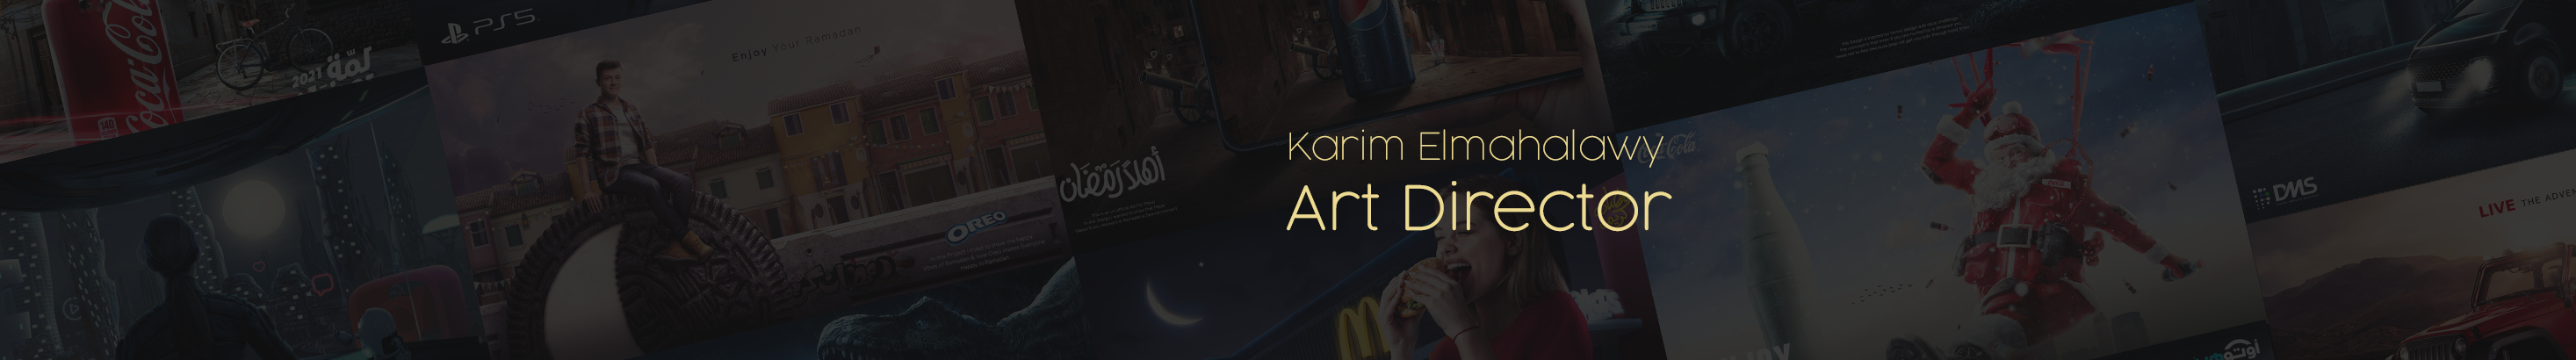 Profil-Banner von Karim Elmahalawy